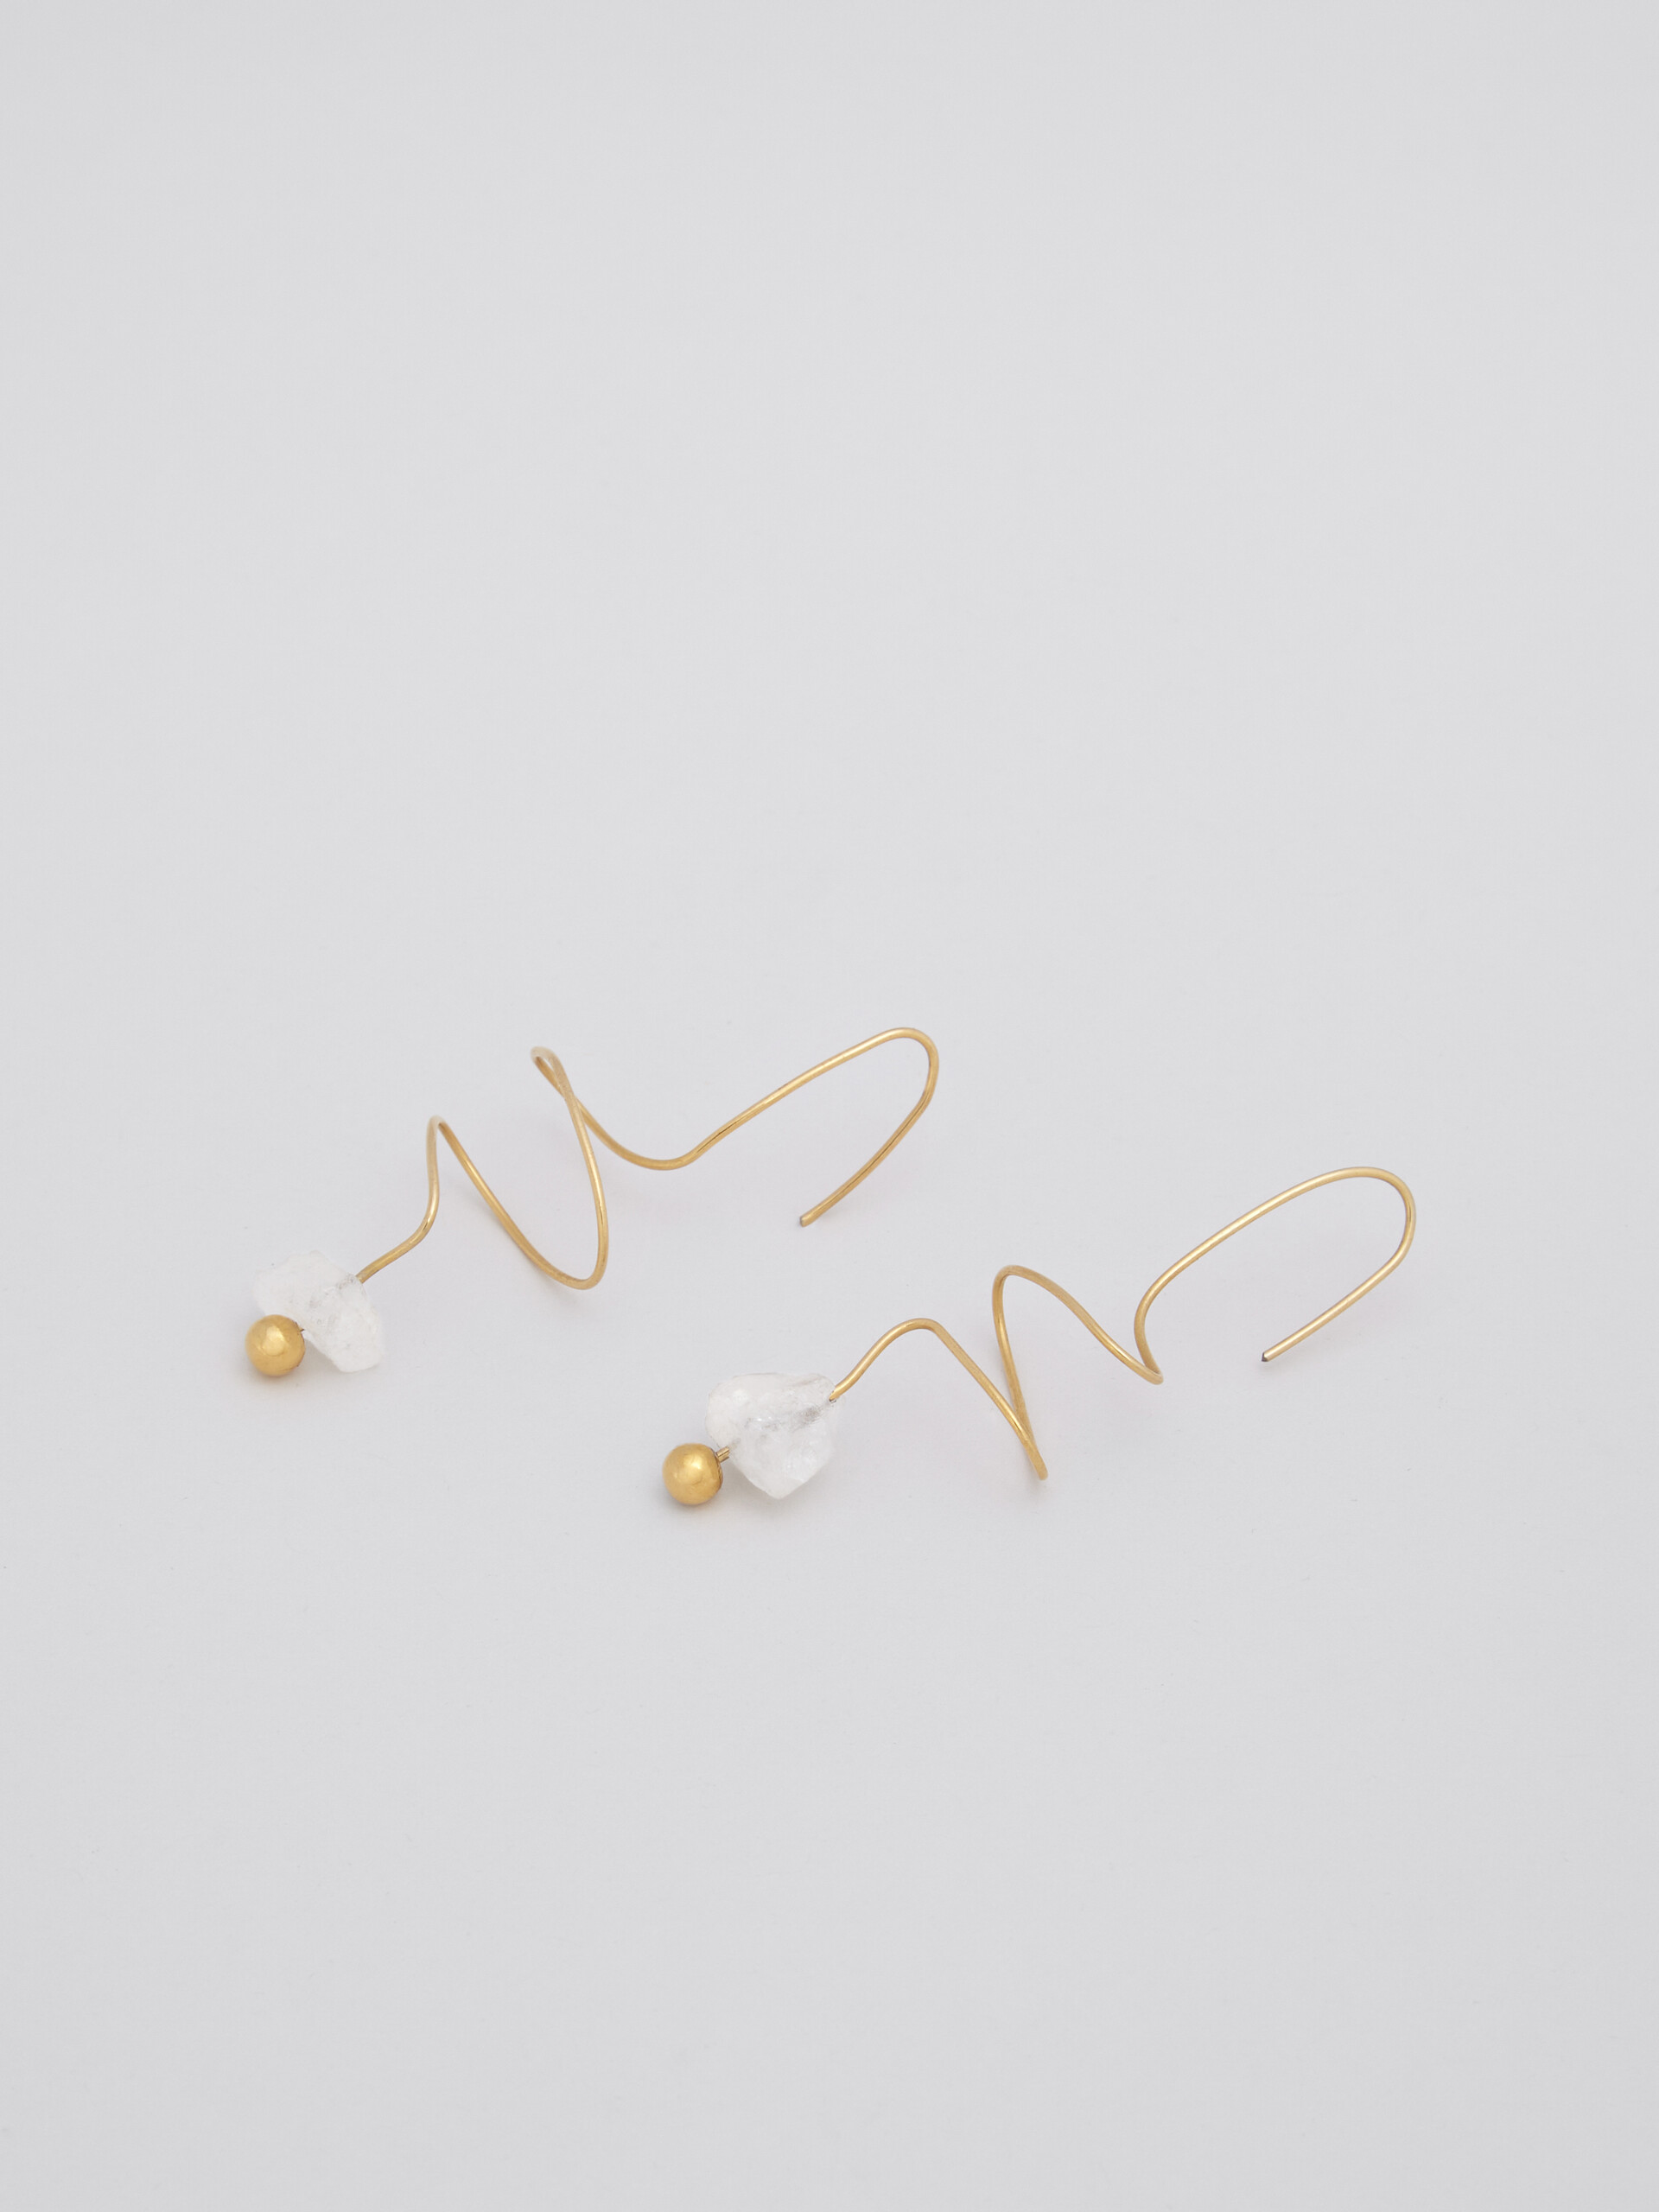 TEARS hook earrings in gold-tone brass and quartz - Earrings - Image 3